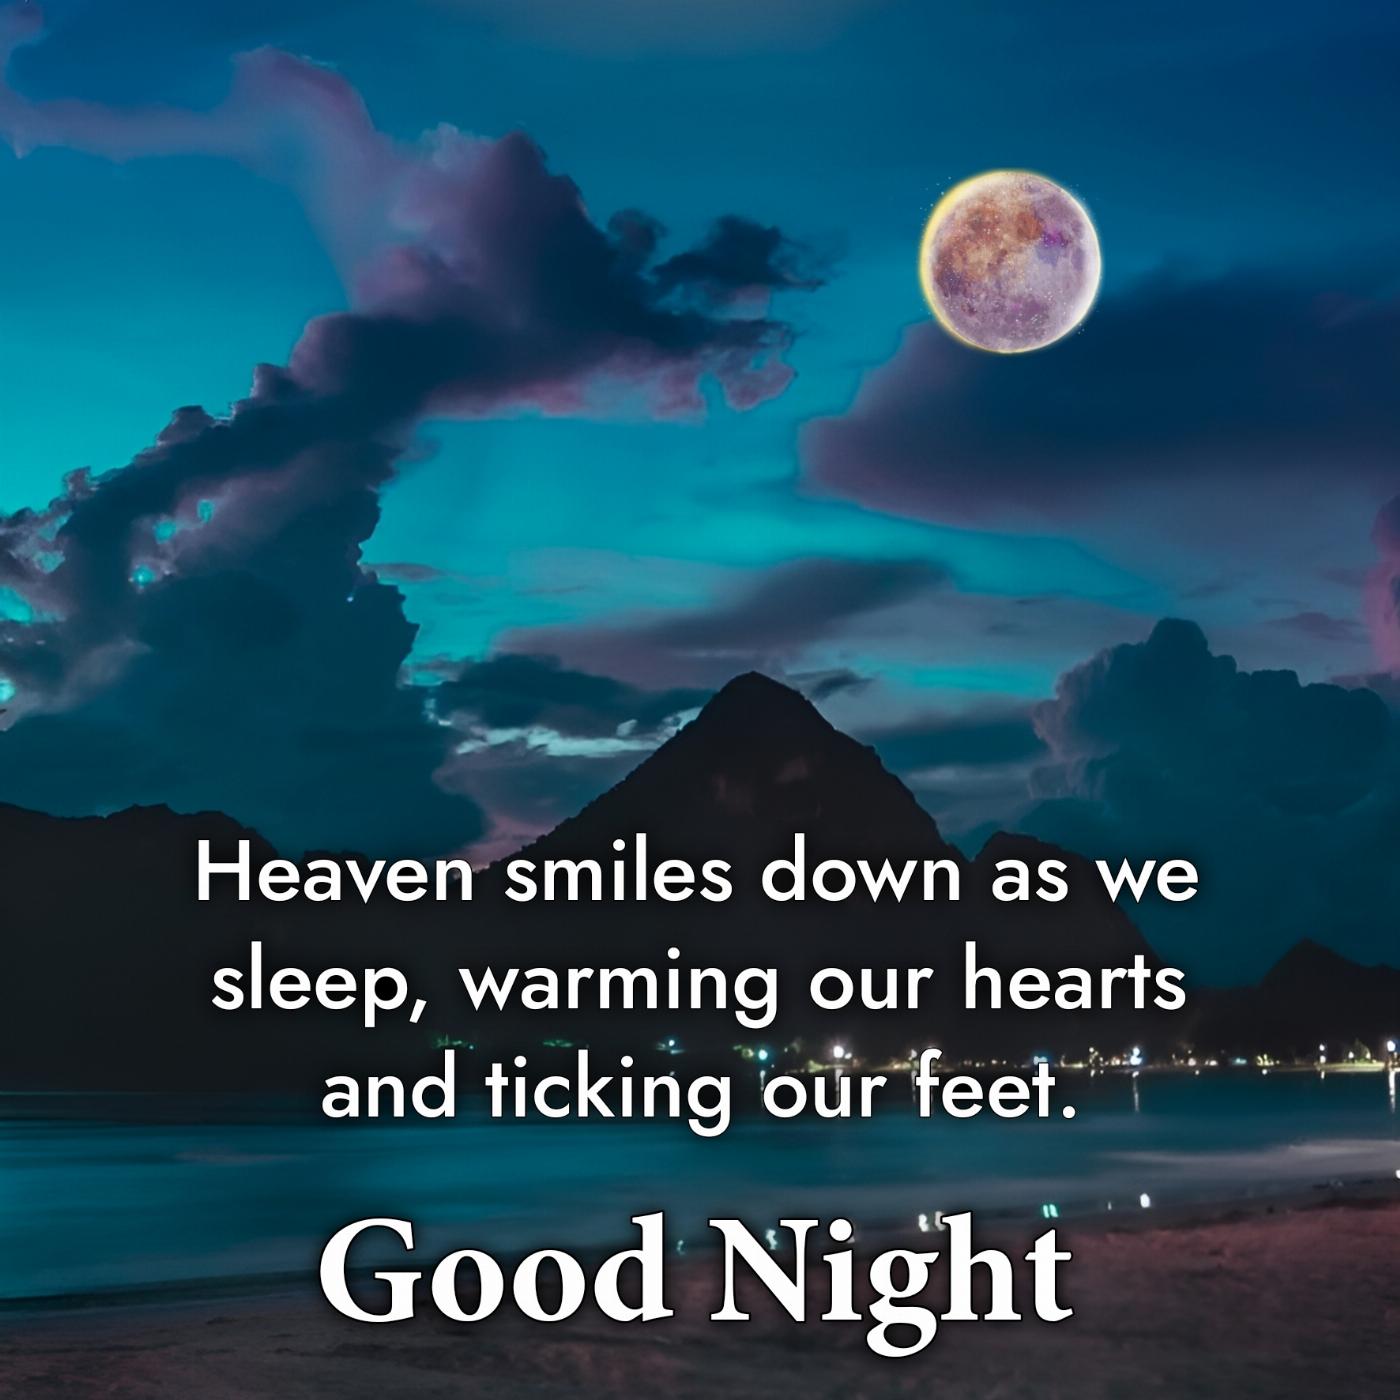 Heaven smiles down as we sleep